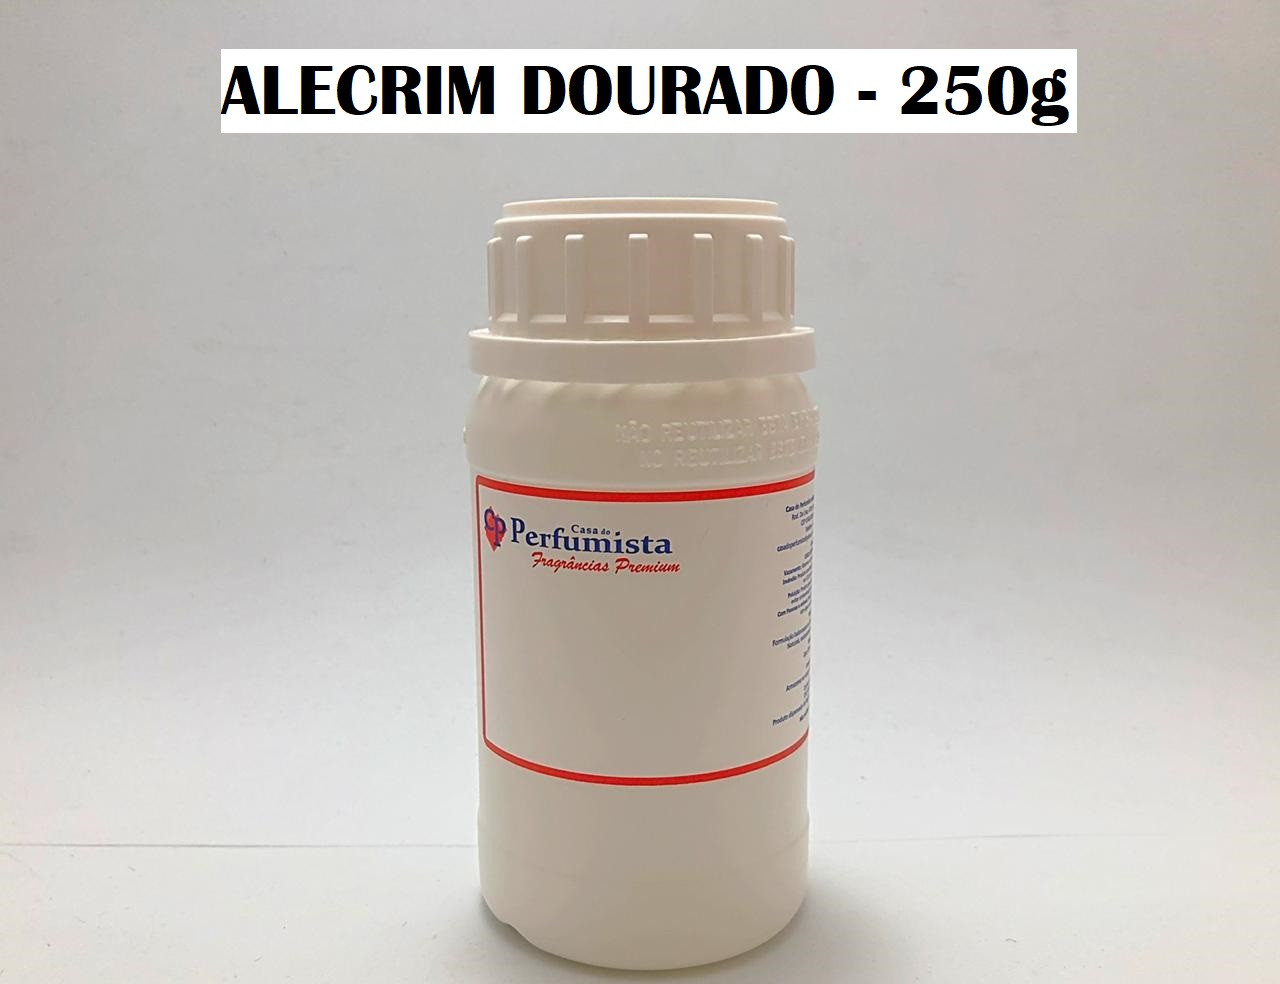 ALECRIM DOURADO - 250g - Inspiração: Le Lis Blanc 